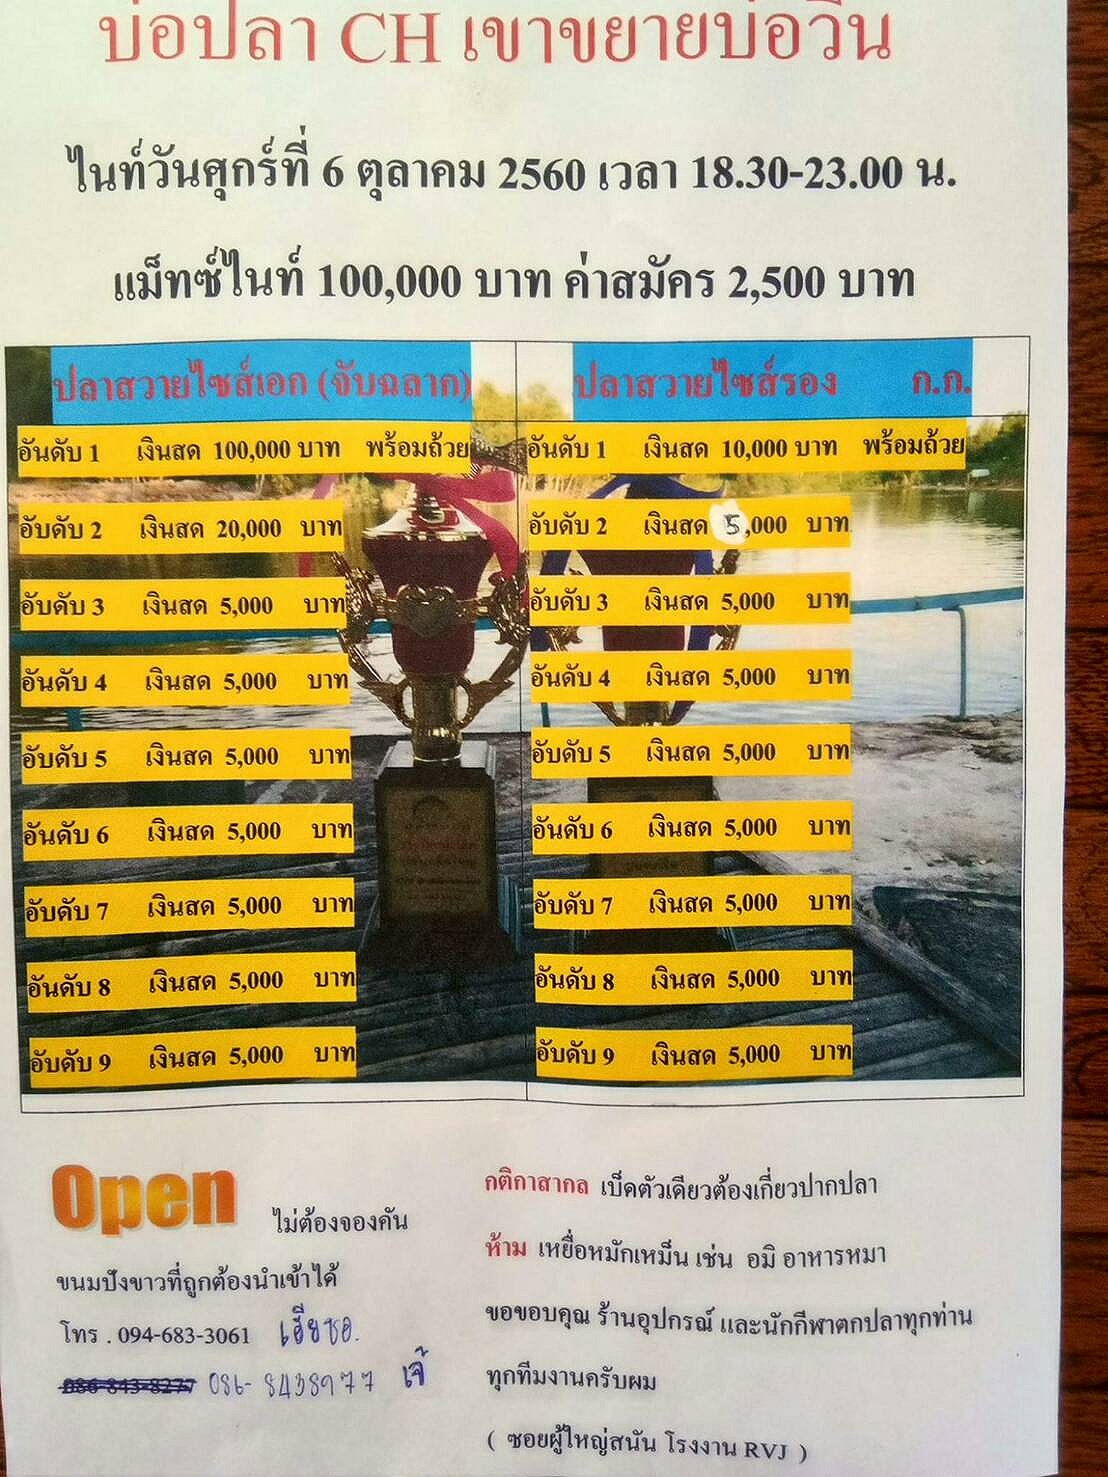 บ่อตกปลา CH ไนท์วันศุกร์นี้  6 ตุลาคม 2560 OPEN ชิงเงิน 100,000 บาท หาง 5000 บาท